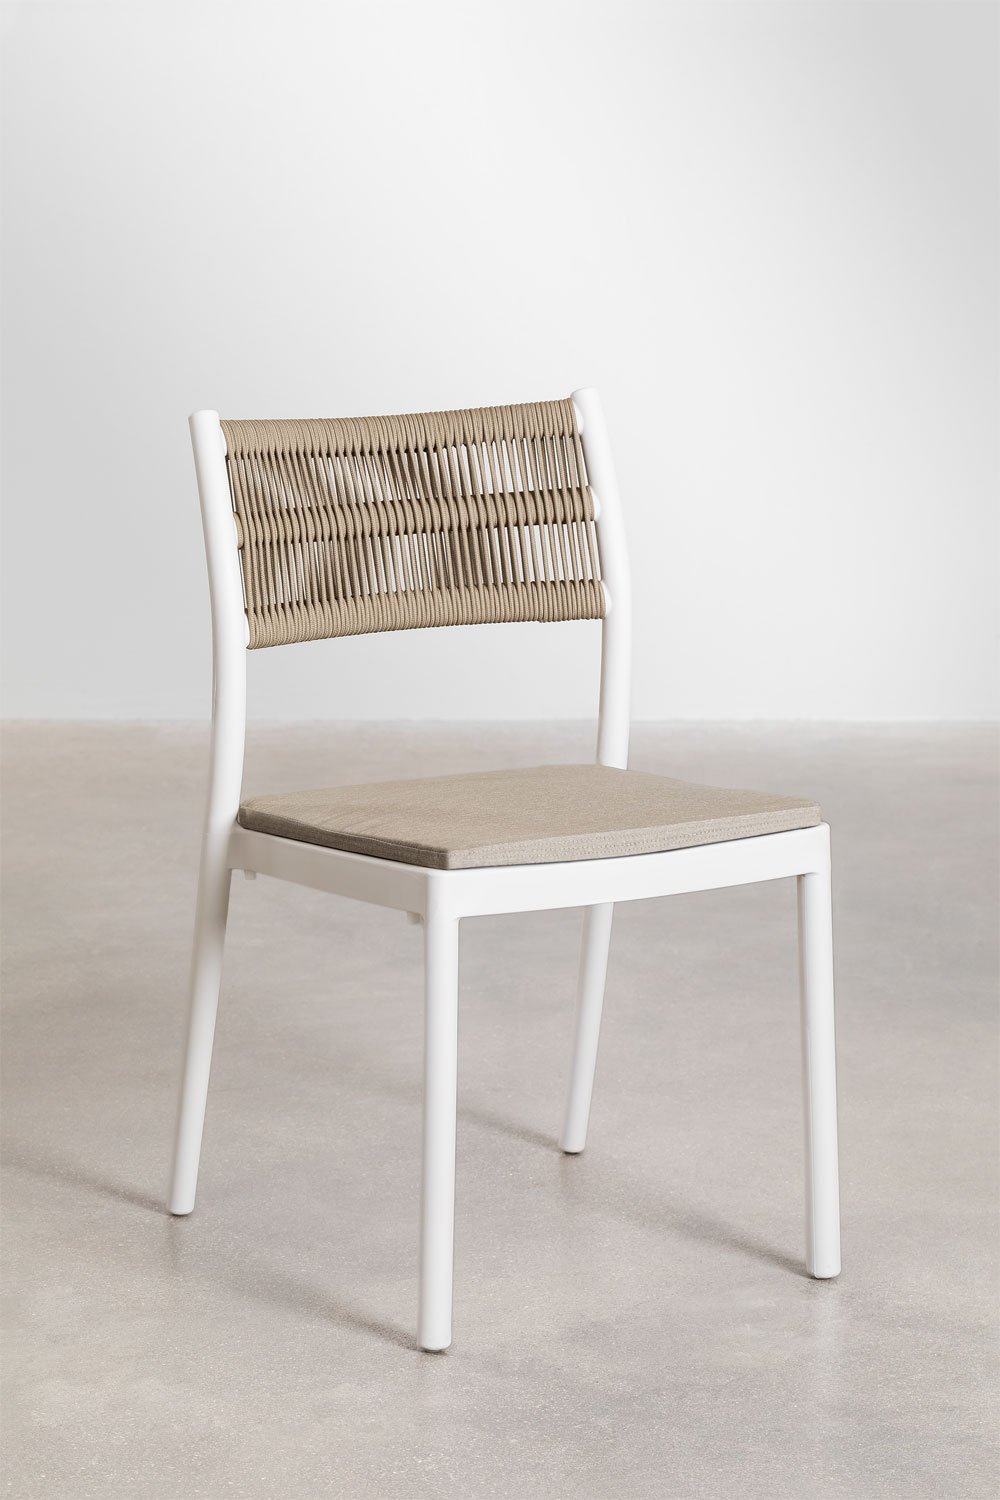 Confezione da 2 sedie da pranzo impilabili Favila, immagine della galleria 1